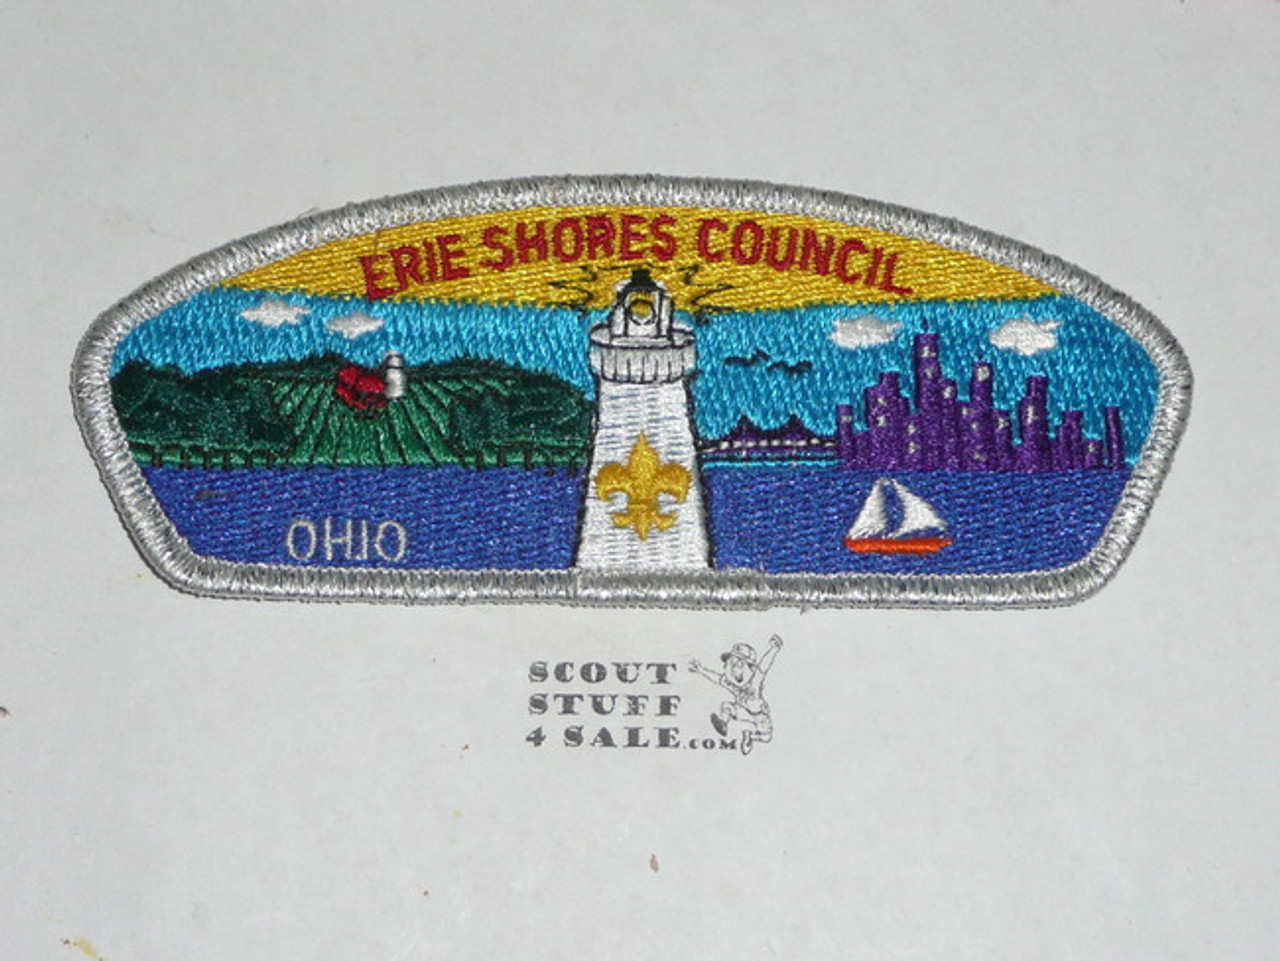 Erie Shores Council sa2 CSP - Scout